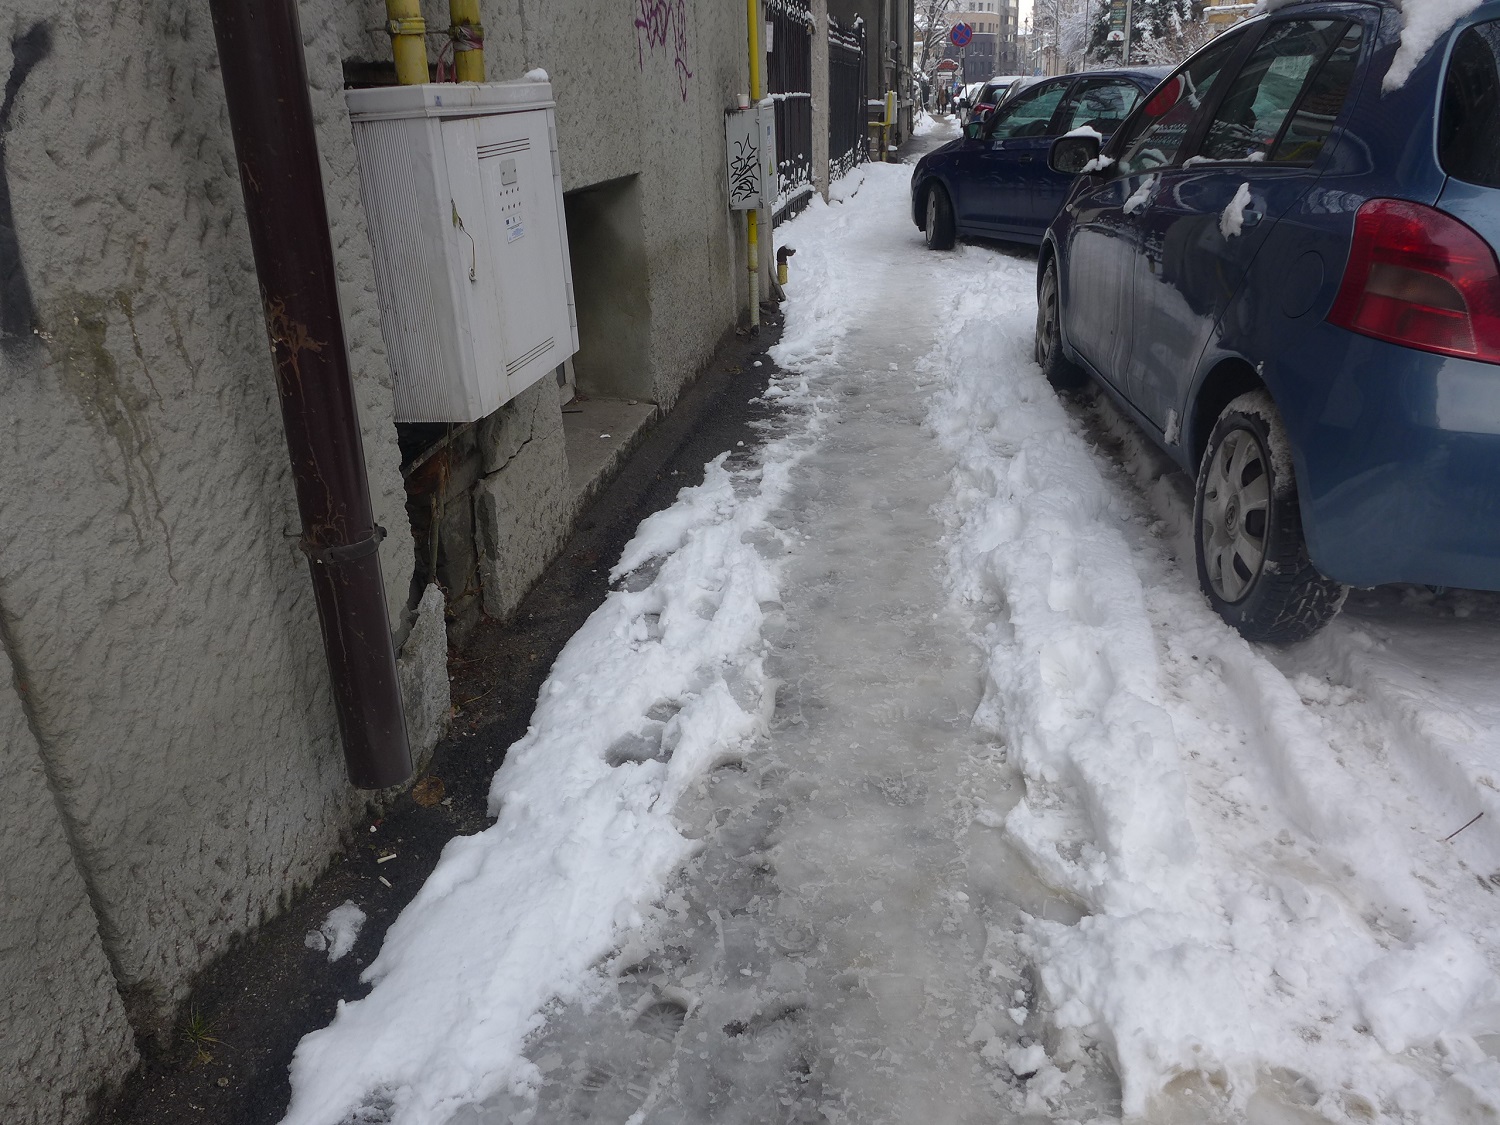 Ici, un exemple de neige où on peut marcher sans craindre de glisser : elle ne forme pas de plaque, on dirait plutôt de la bouillasse.